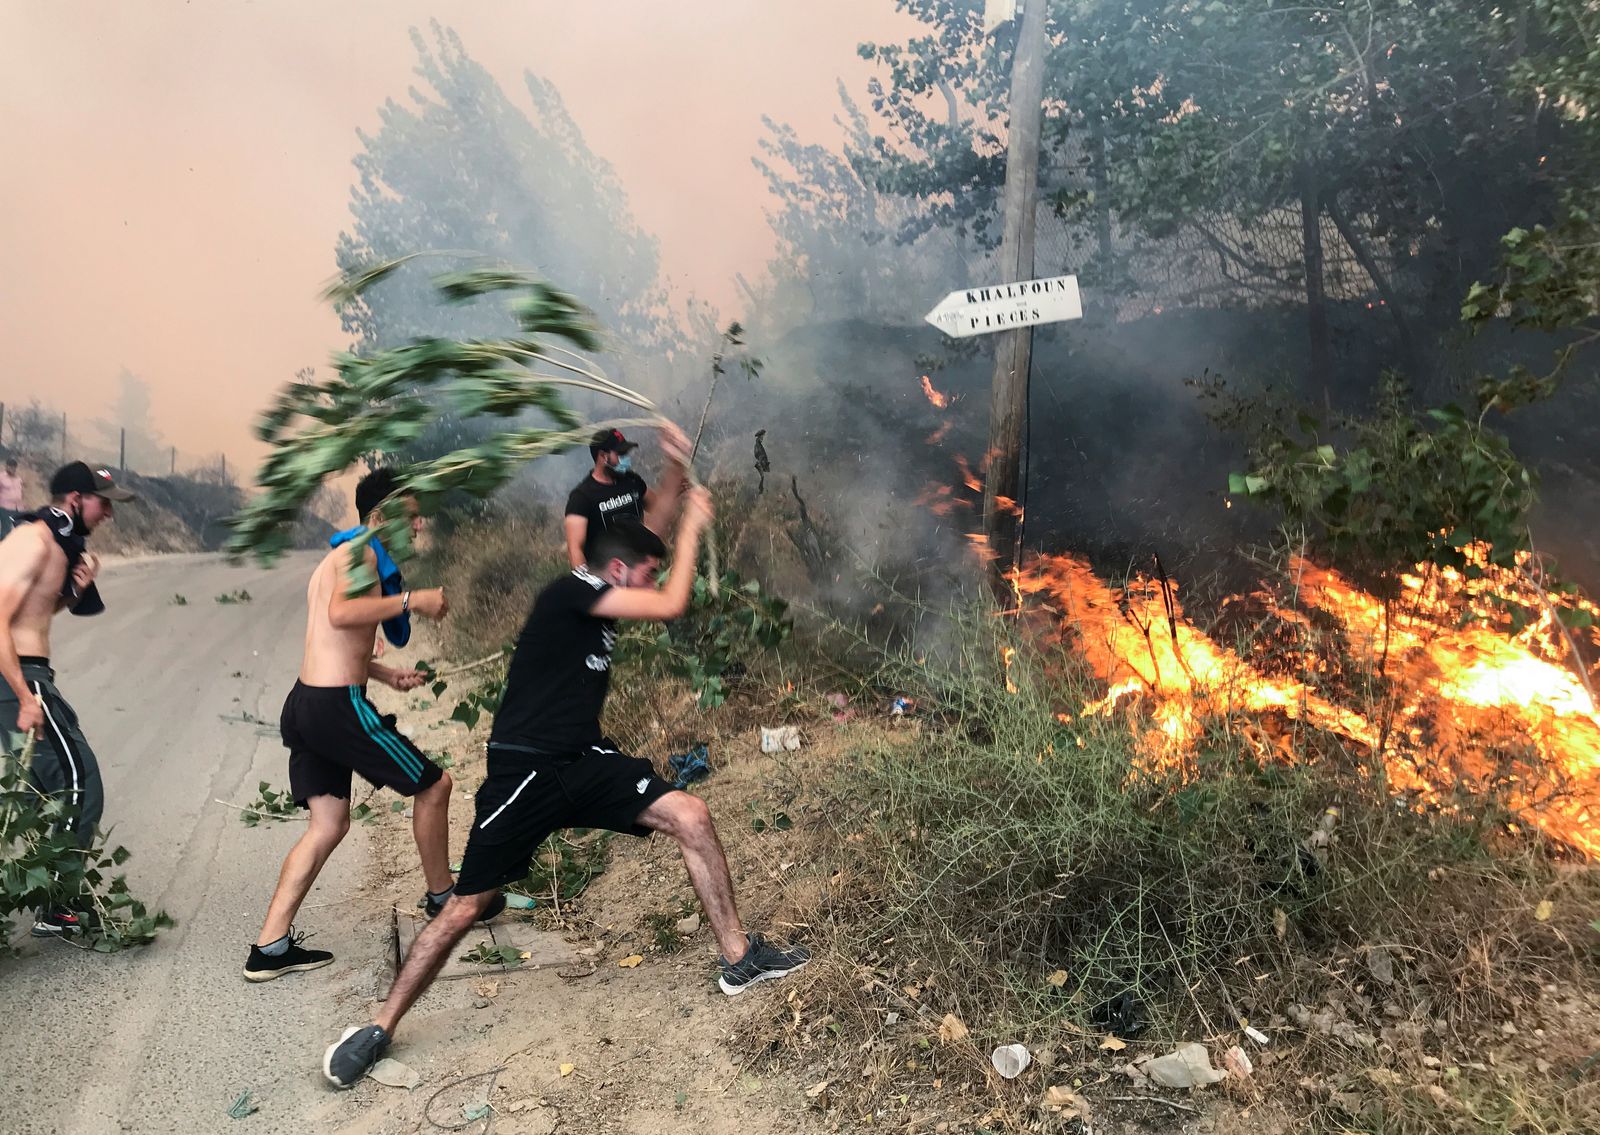 شبان يحاولون إطفاء الحرائق بواسطة أغصان الأشجار. - REUTERS - REUTERS